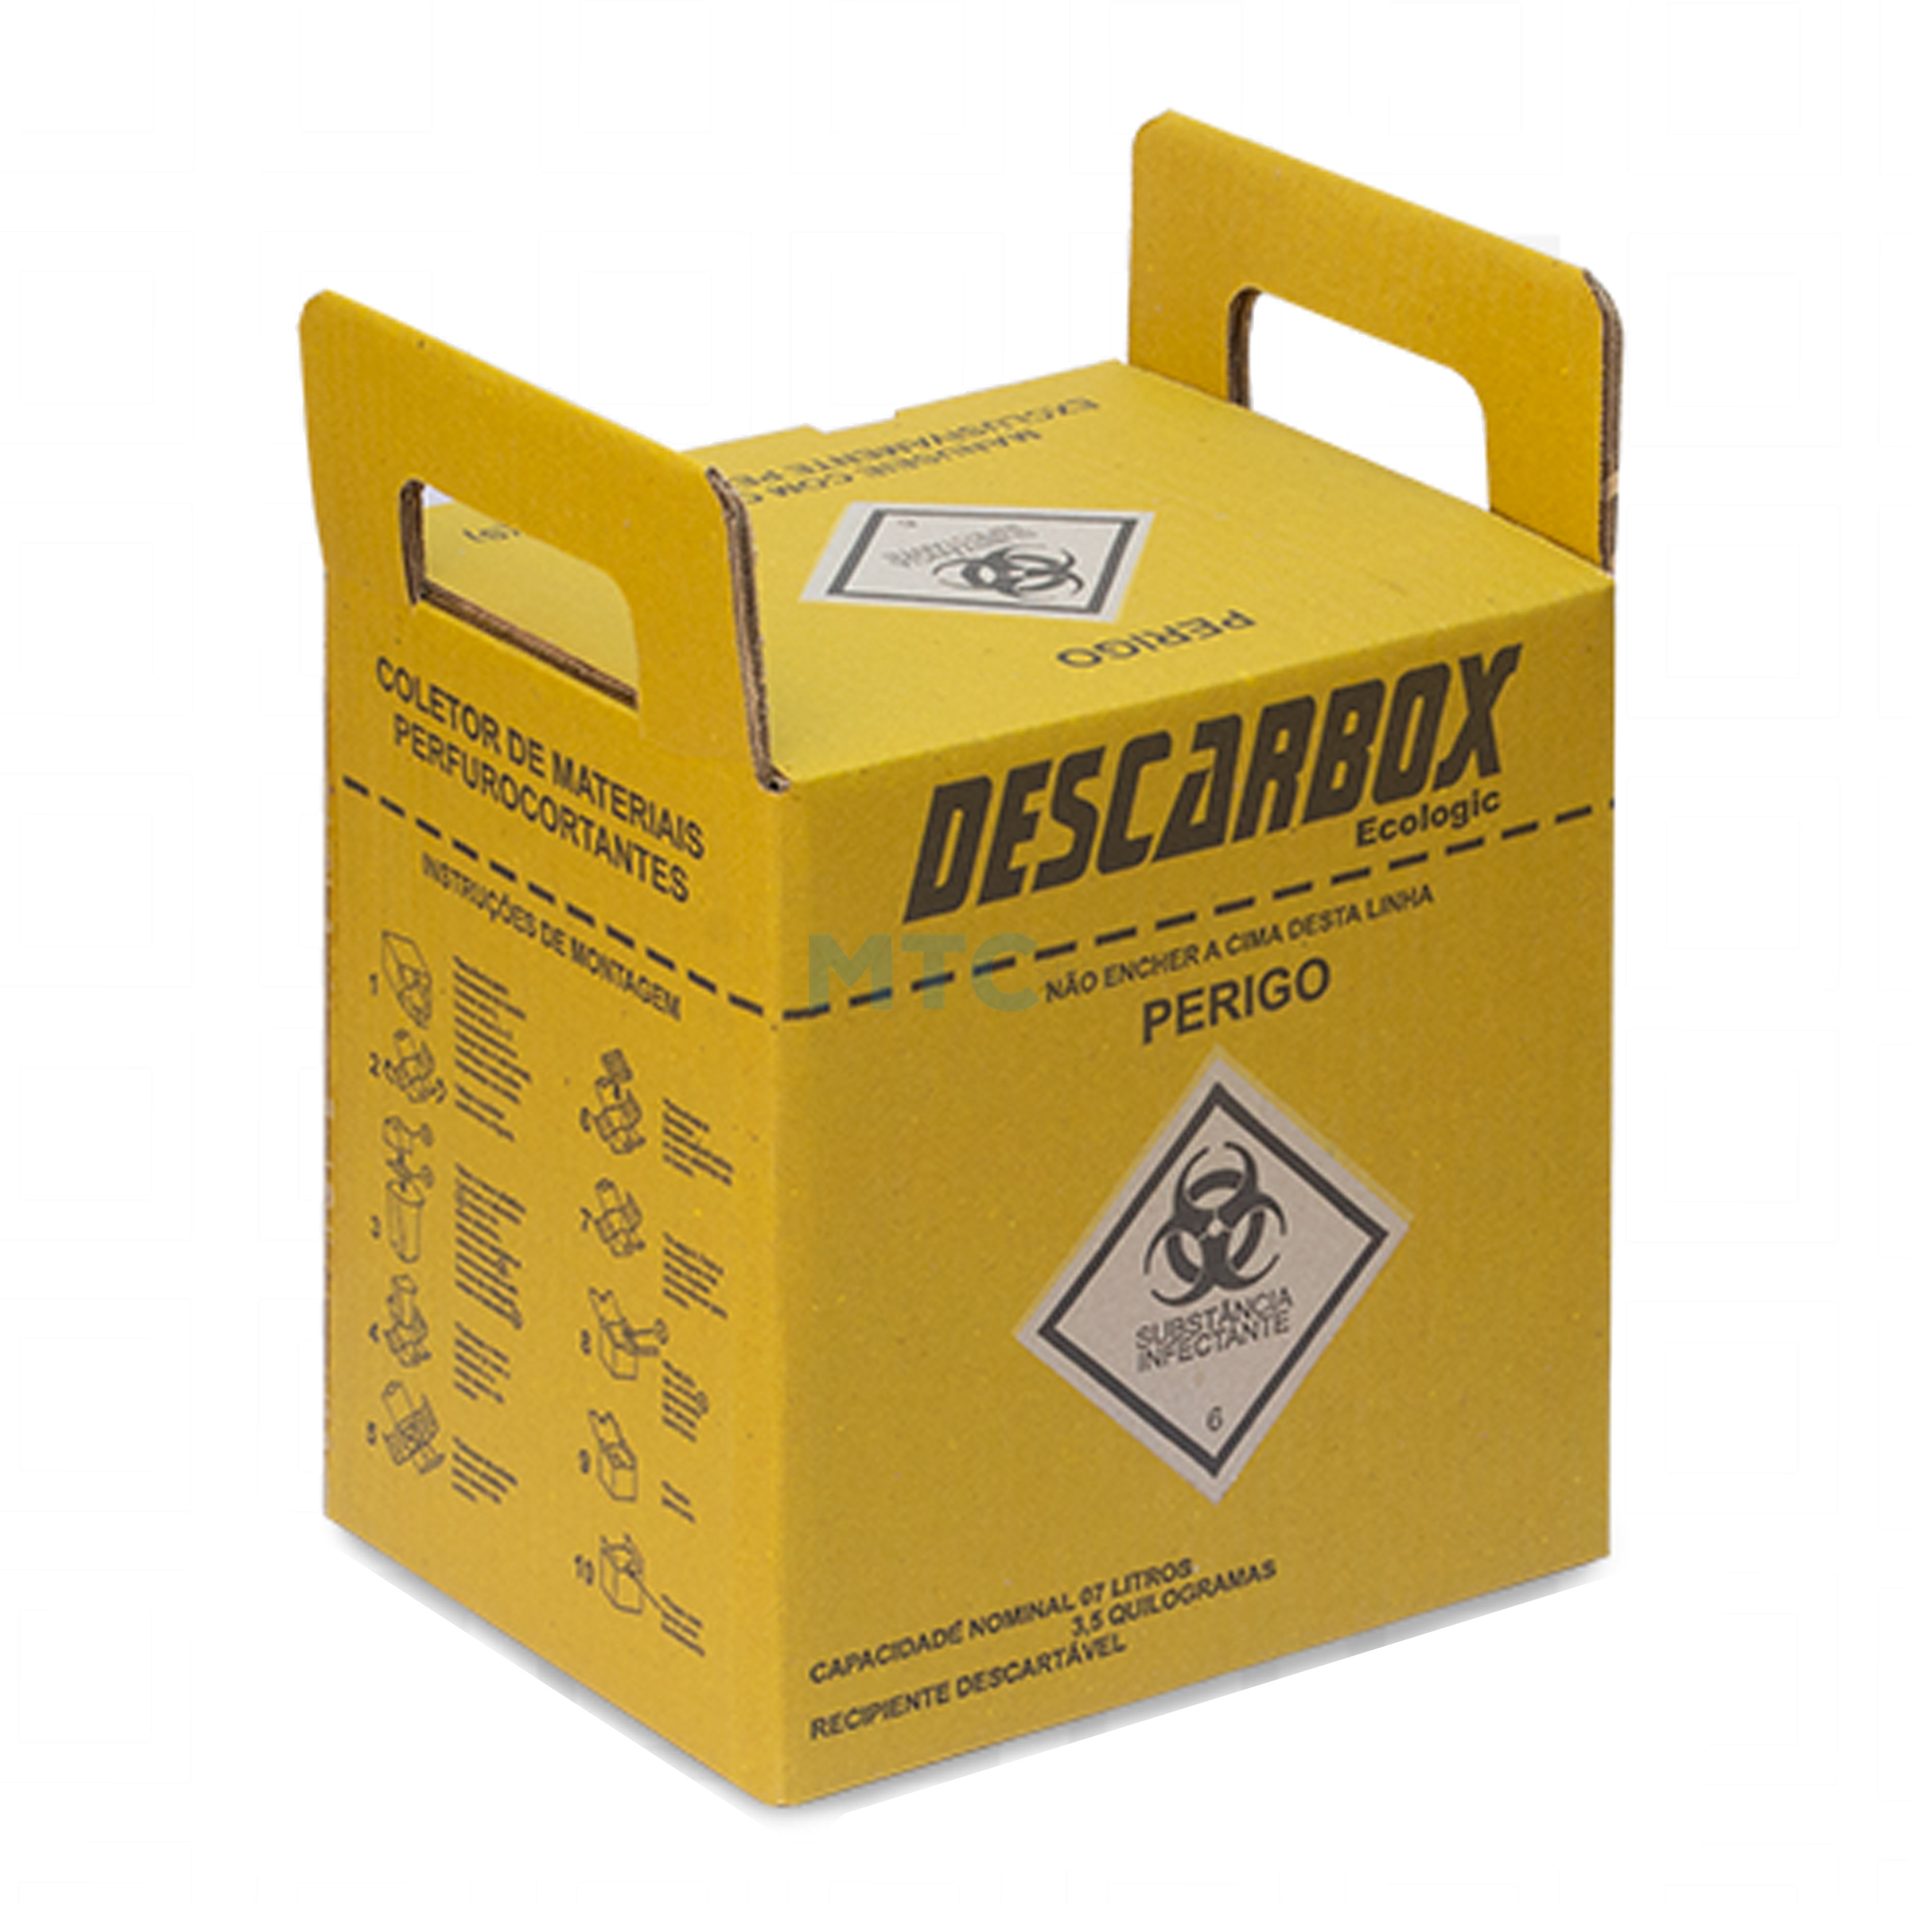 Caixa Coletora de Material Perfurocortante - Ecologic Descarbox 3,0L